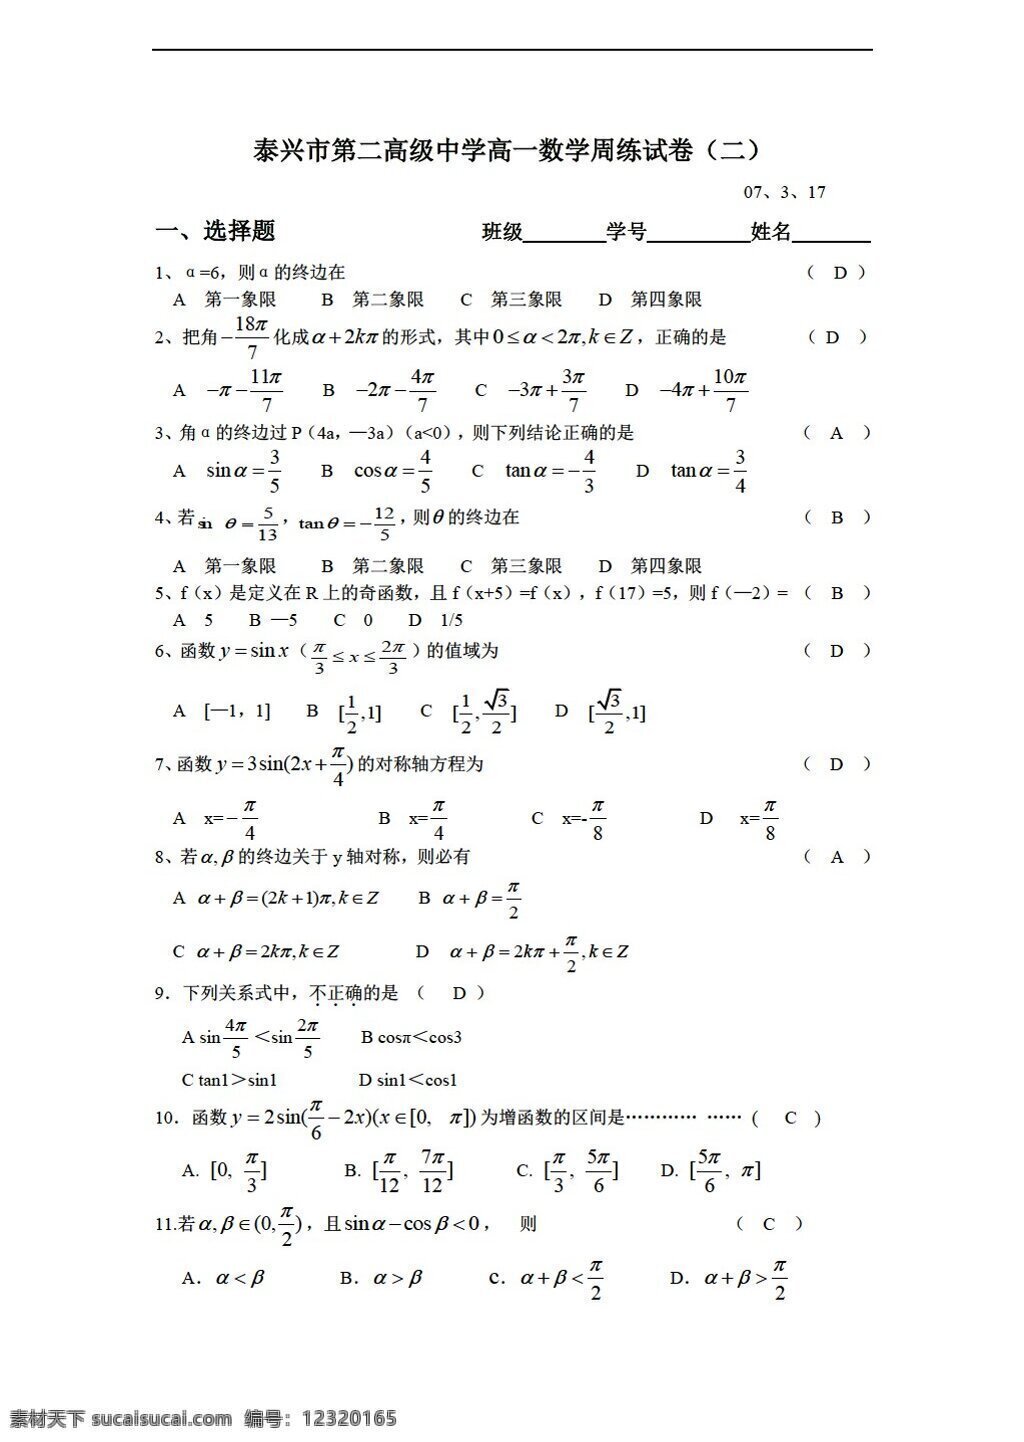 数学 苏 教 版 泰兴市 二 高级中学 周 练 试卷 苏教版 必修4